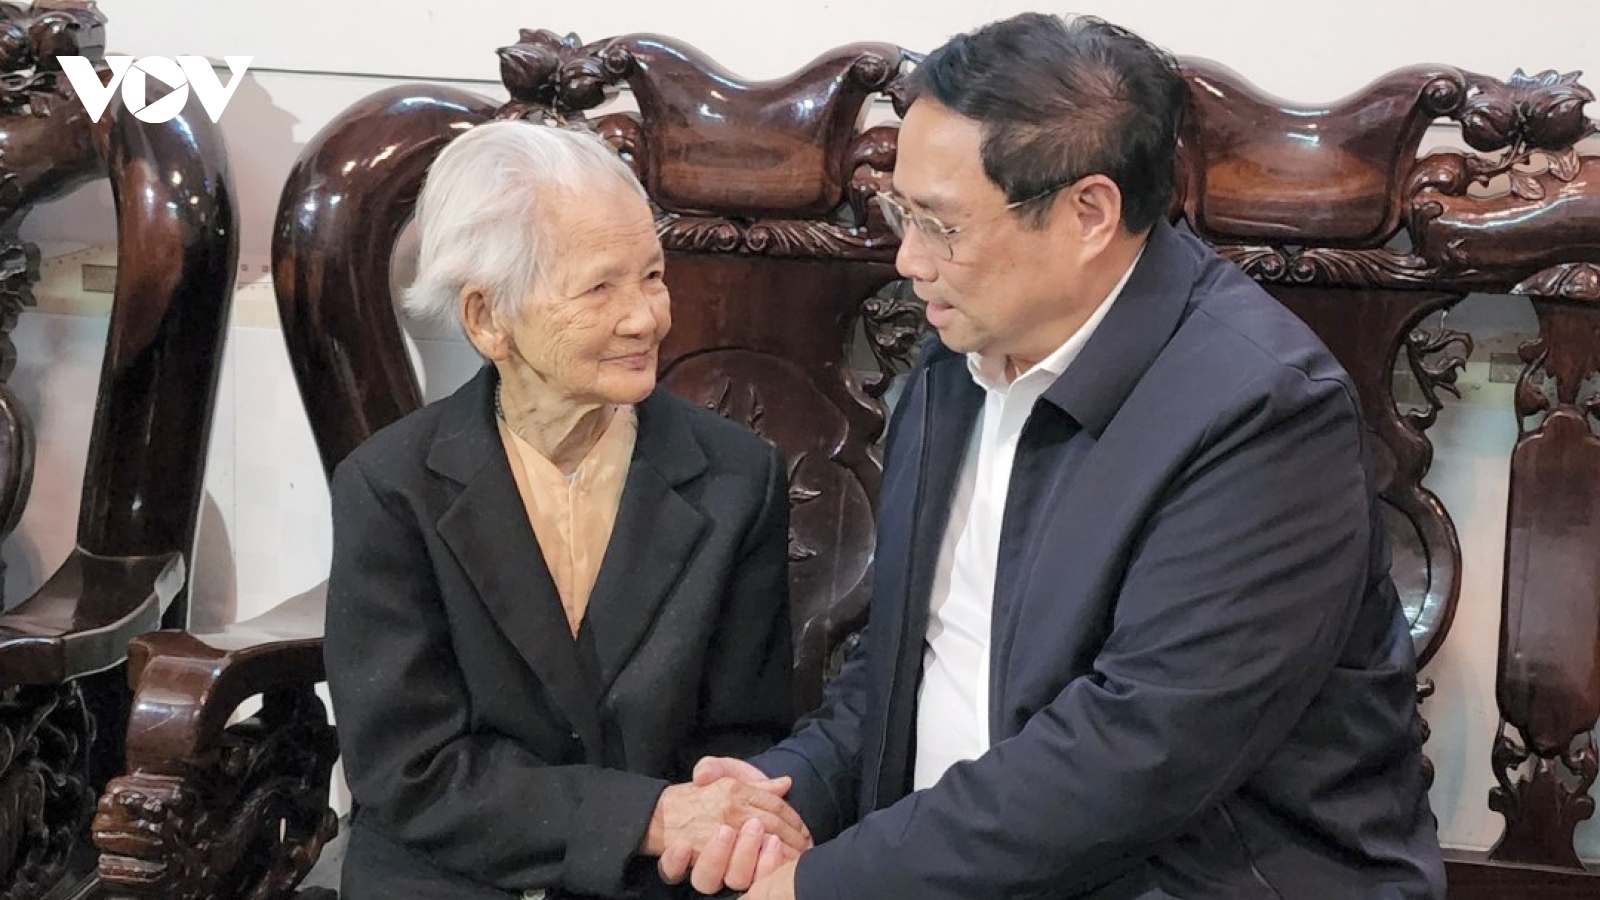 Thủ tướng Phạm Minh Chính thăm các gia đình chính sách tại Phú Yên